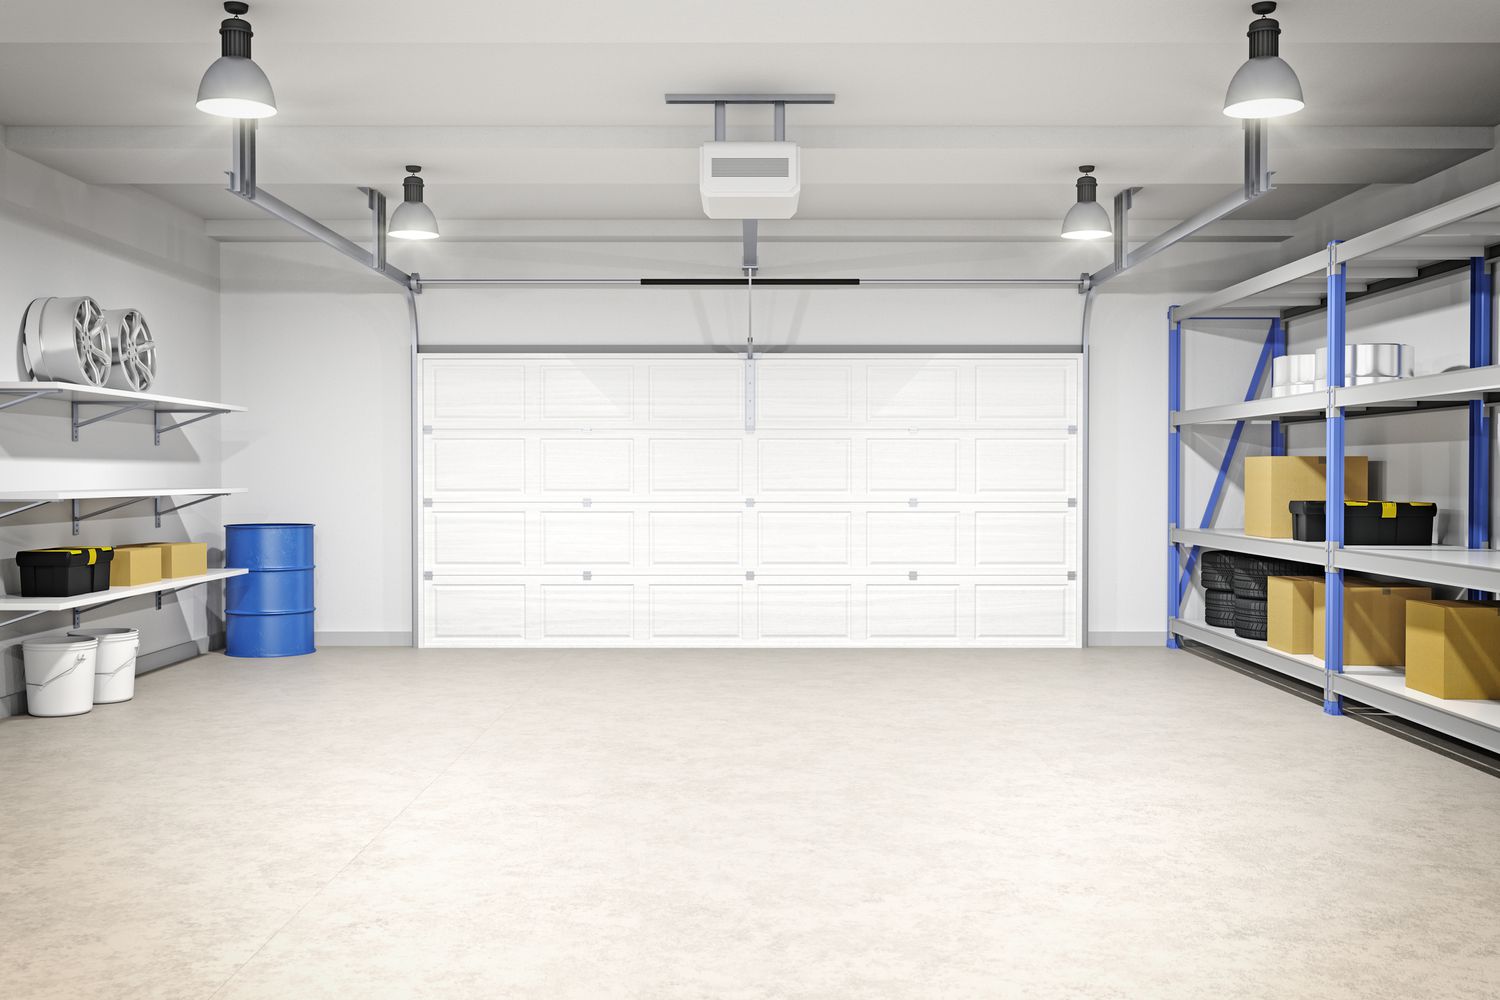 12 ideas de iluminación para garajes